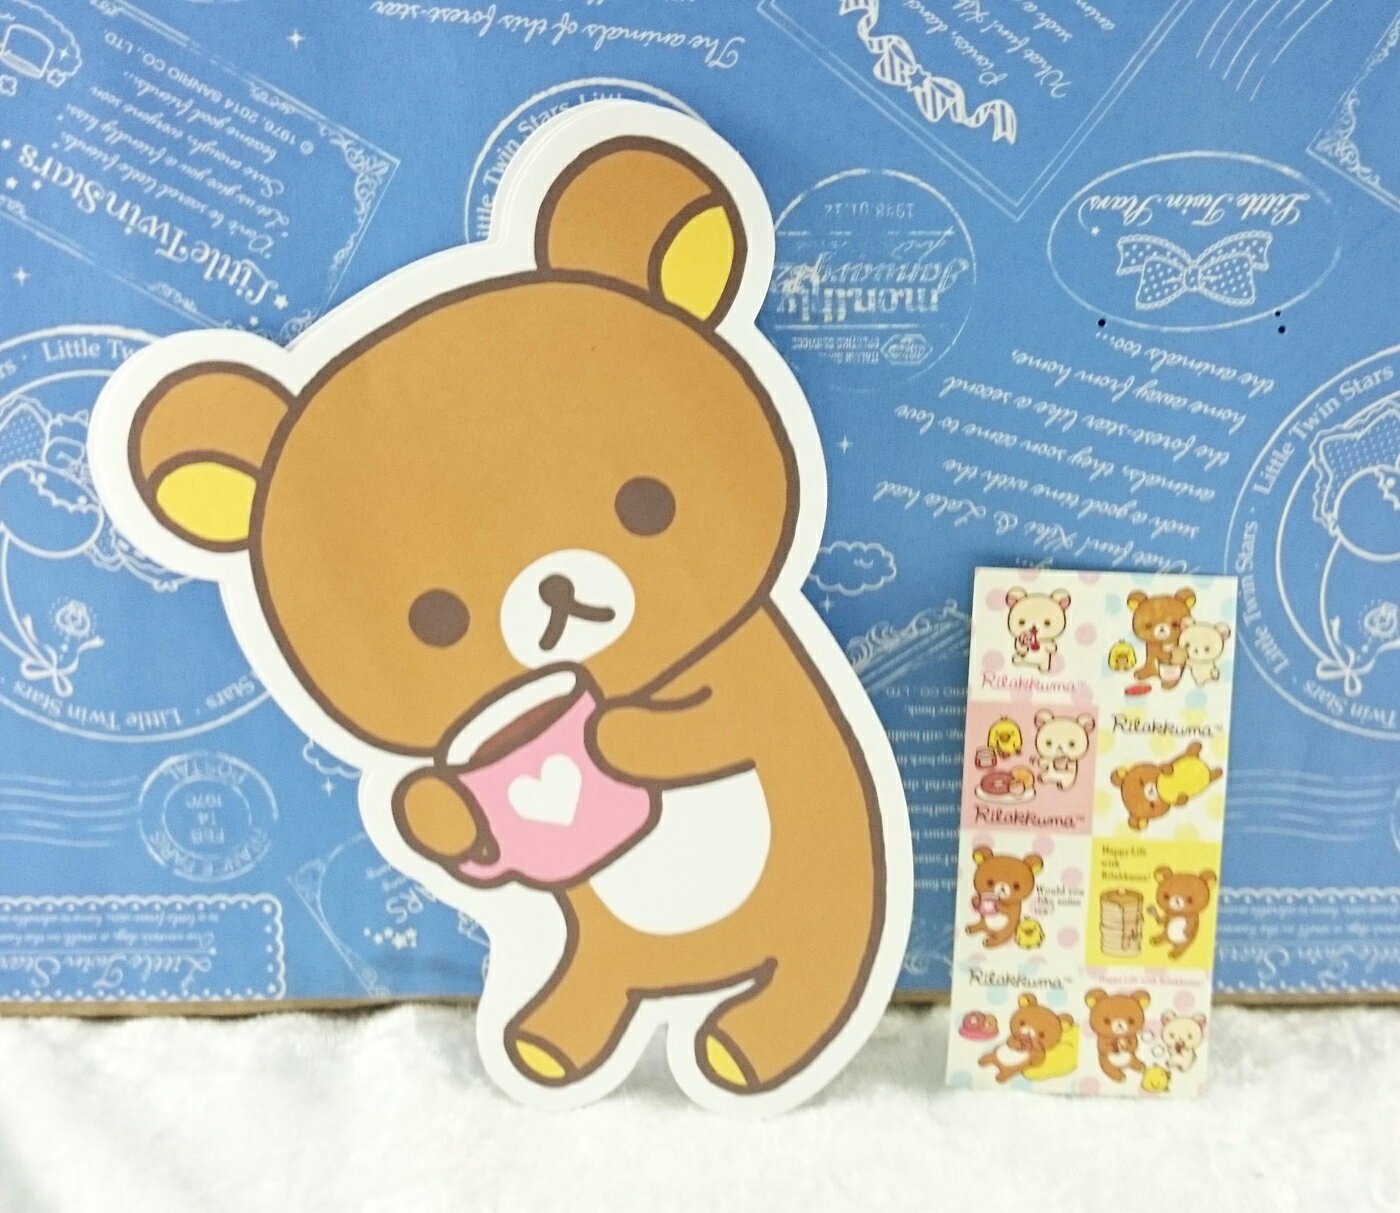 【震撼精品百貨】Rilakkuma San-X 拉拉熊懶懶熊 紅包袋 杯子 震撼日式精品百貨